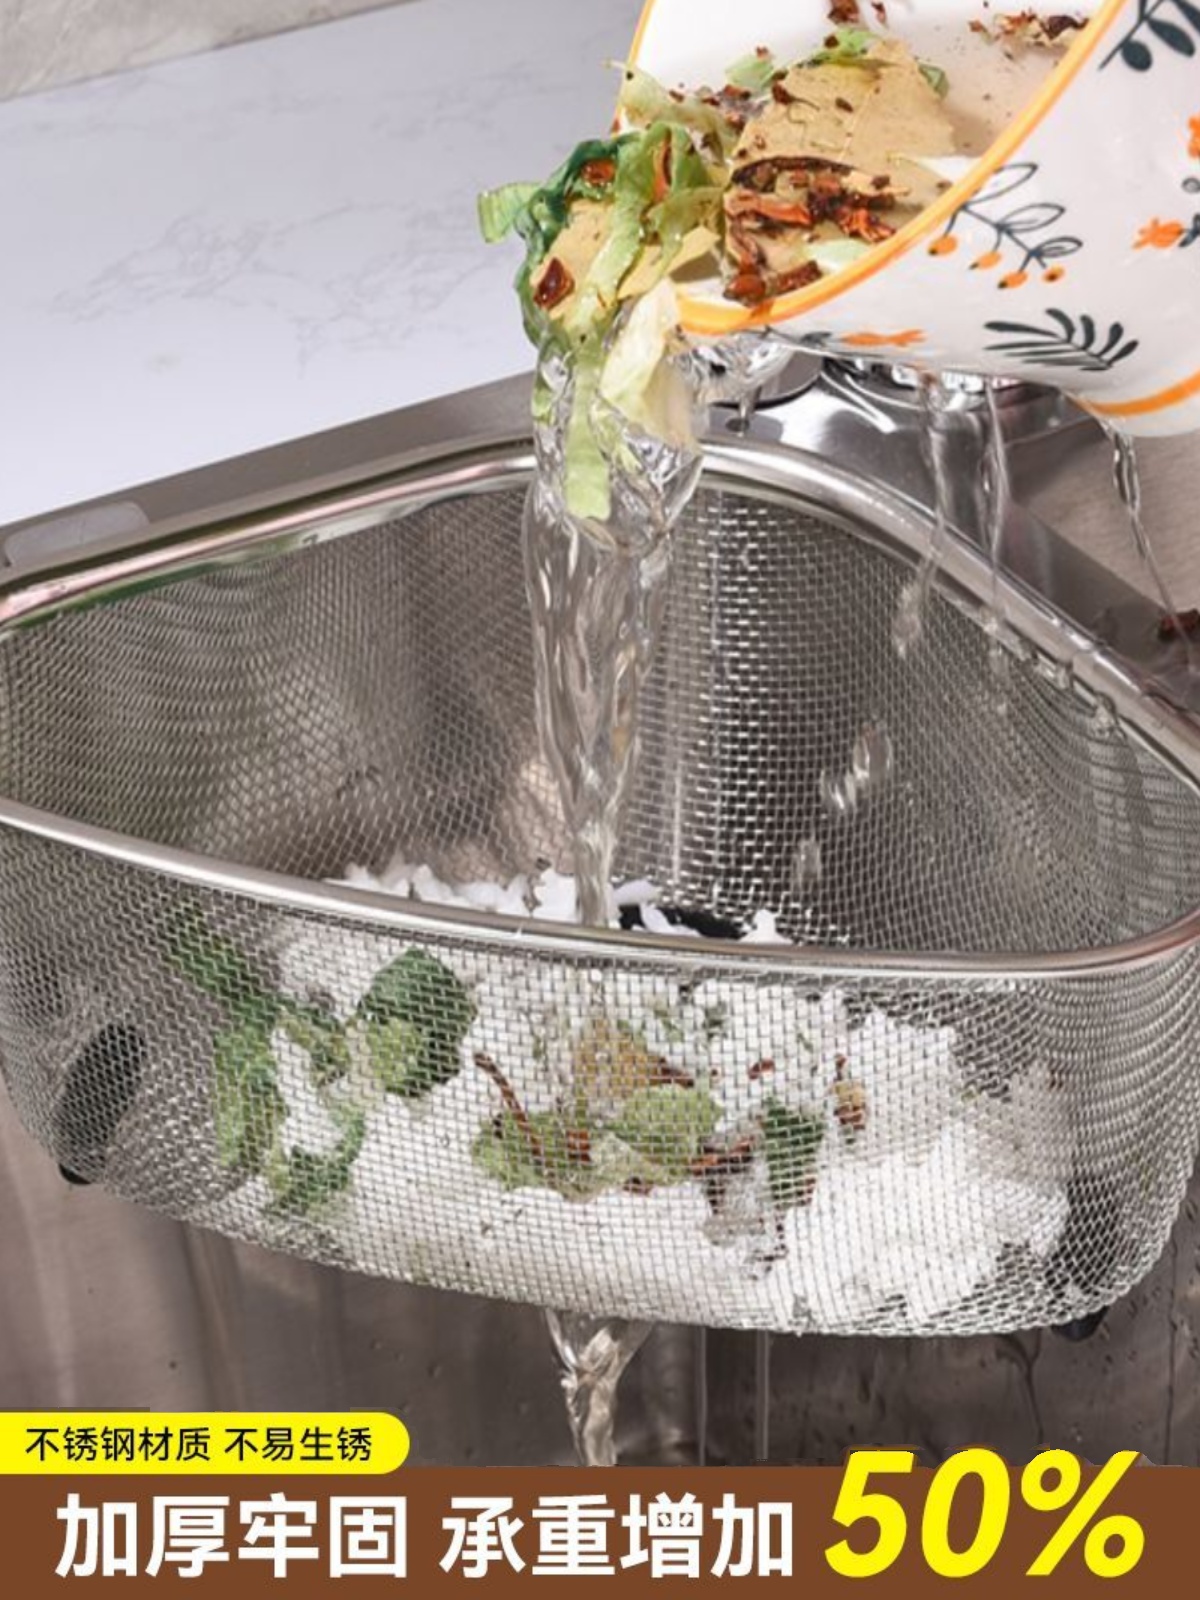 不锈钢厨房过滤网家用水槽垃圾三角沥水篮洗菜水池洗碗槽隔渣收纳